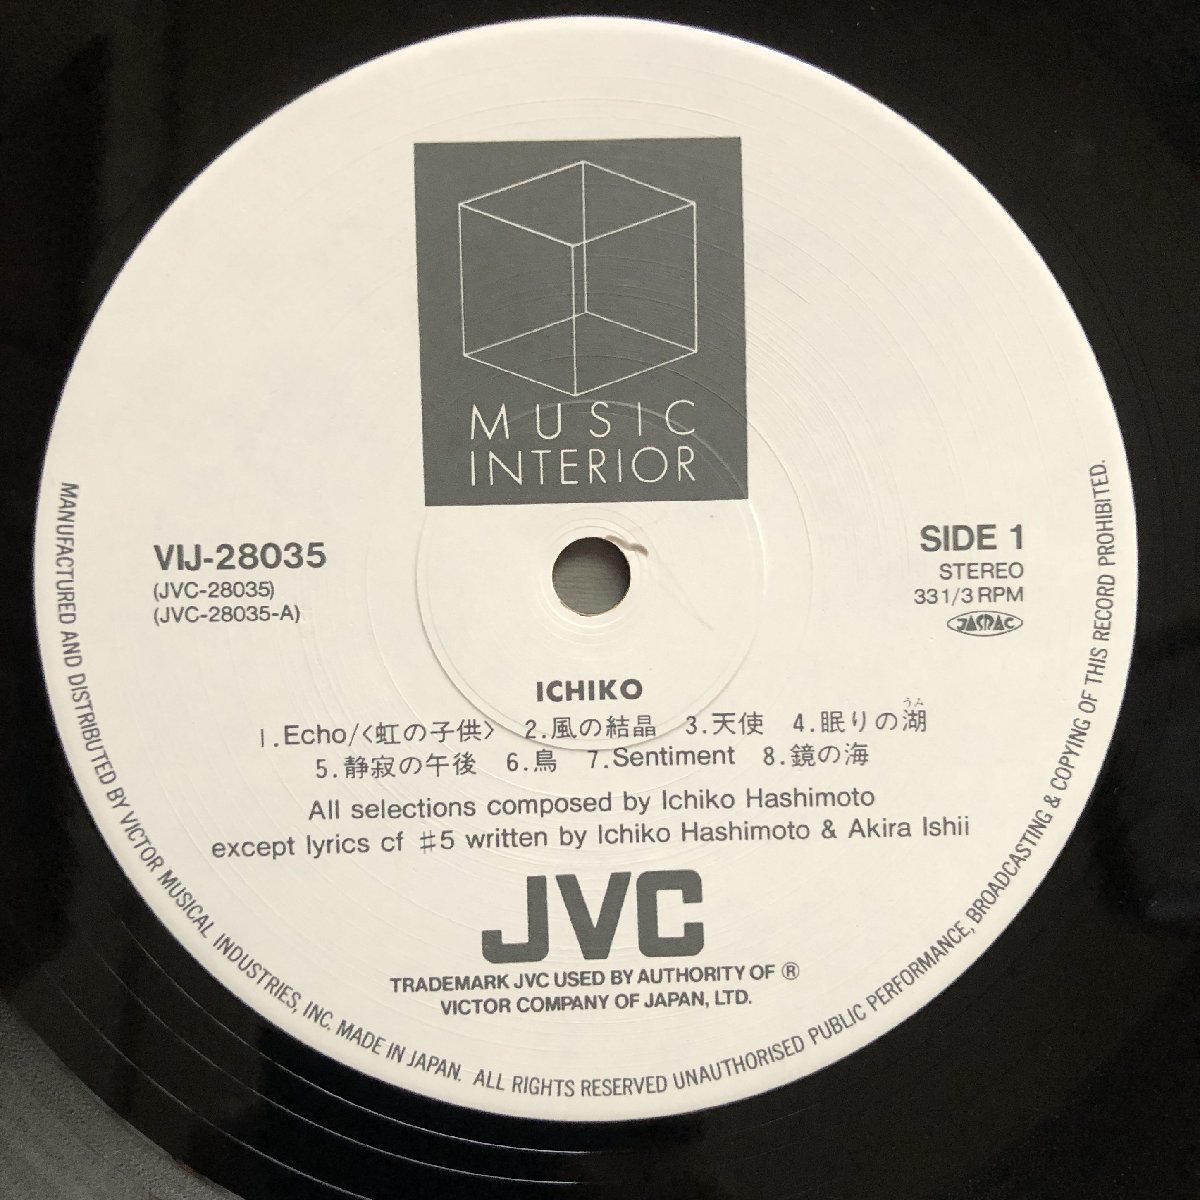 傷なし美盤 美ジャケ 新品並み 1984年 国内盤 橋本一子 Ichiko Hashimoto LPレコード Ichiko: Jazz Fusion Ambient_画像7